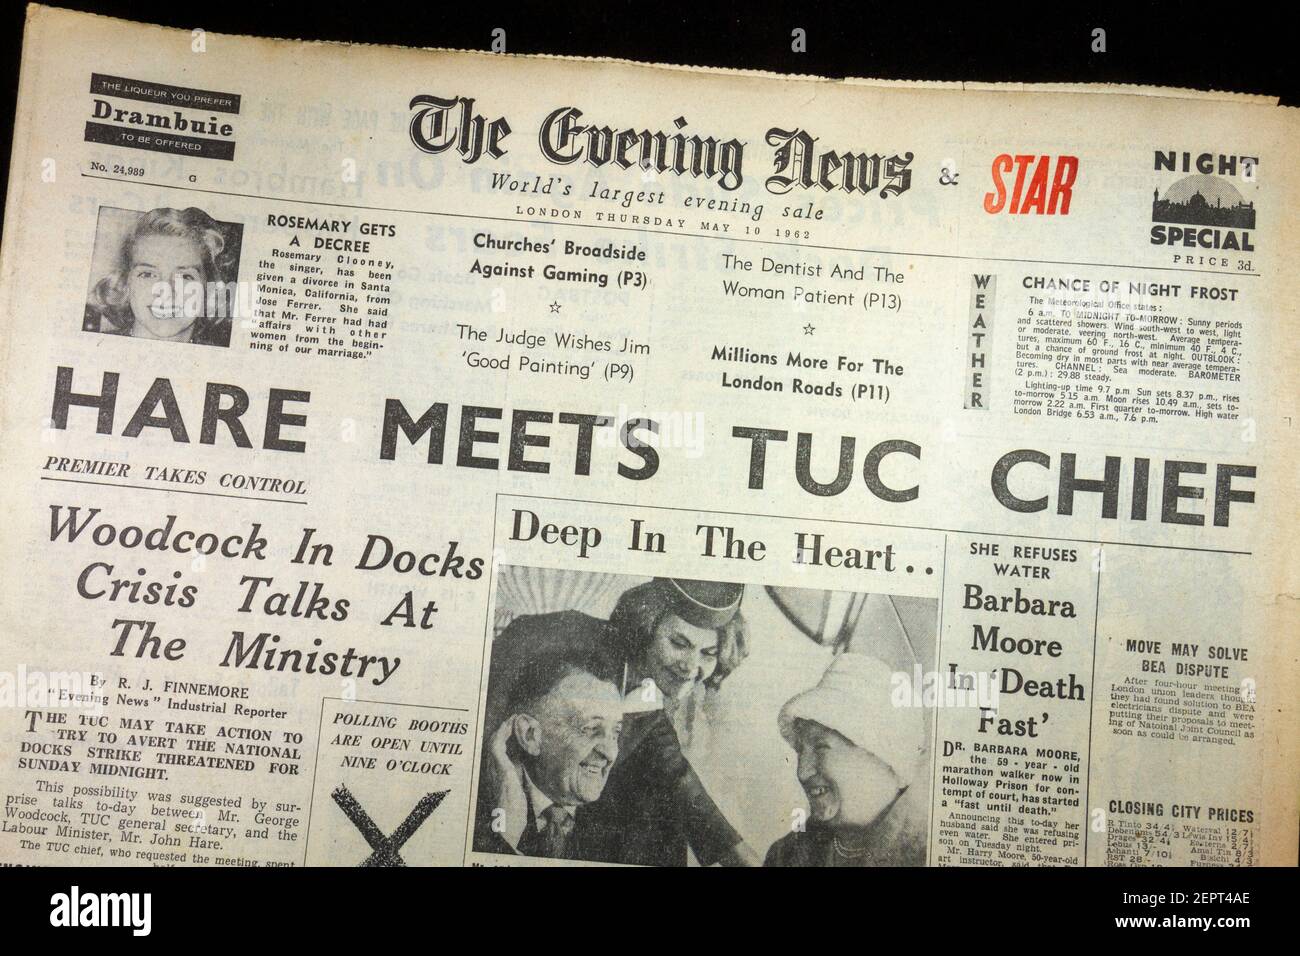 Titelseite und Überschrift der Zeitung Evening News (Donnerstag, 10th. Mai 1962), London, UK. Stockfoto